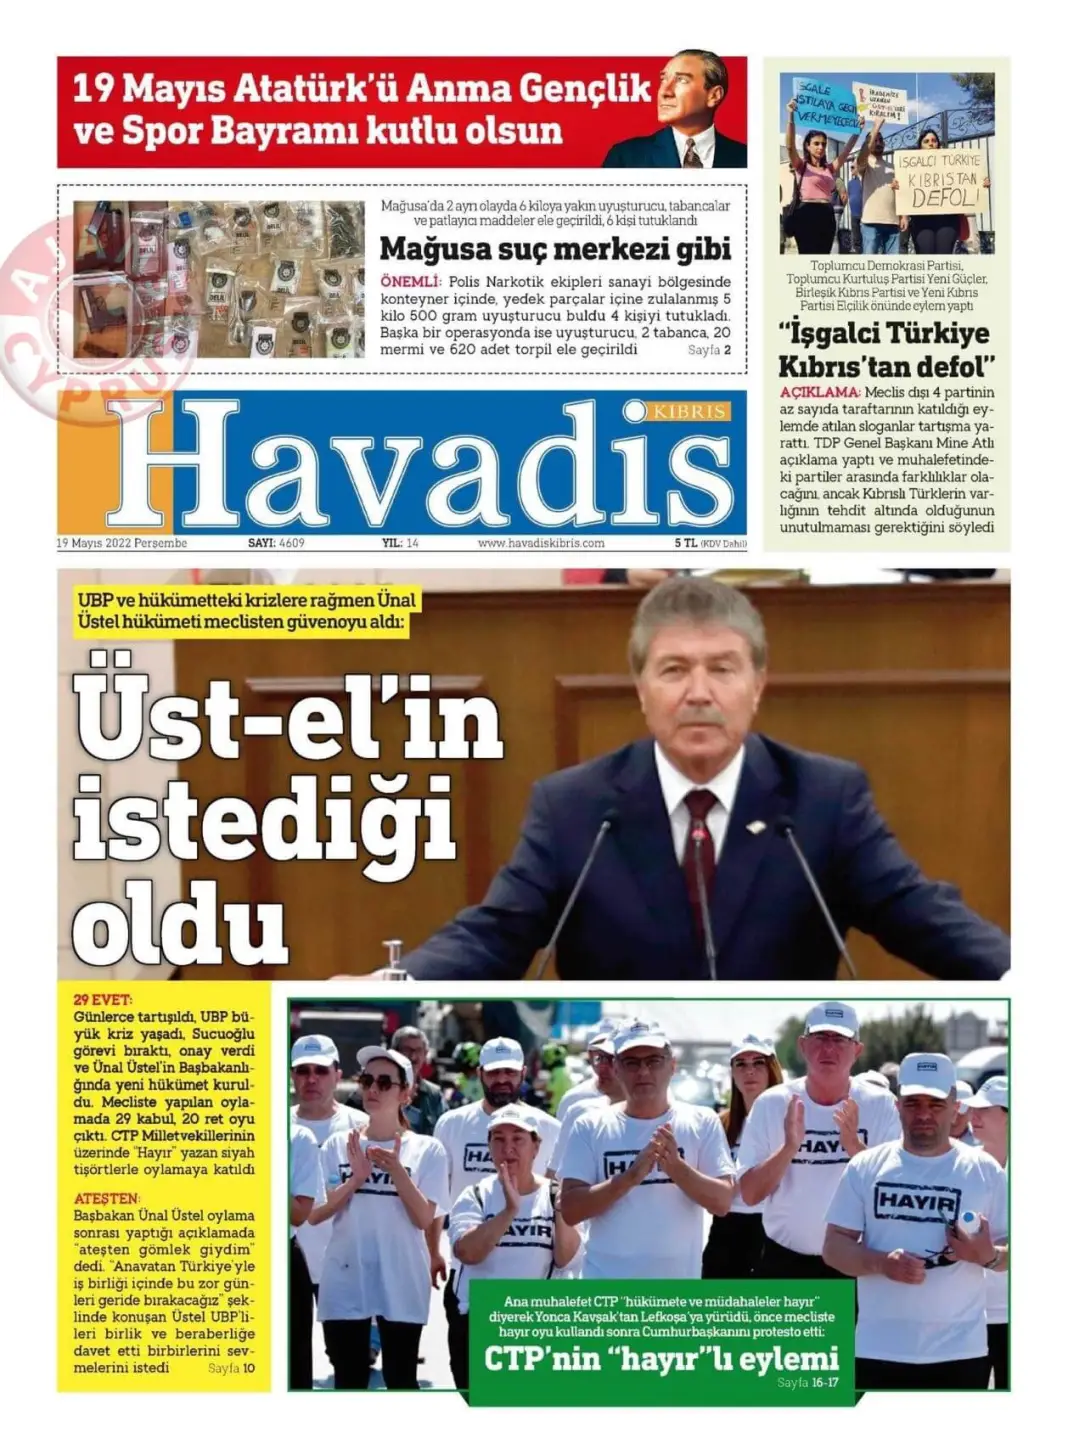 19 Mayıs 2022 Perşembe Gazete Manşetleri 17